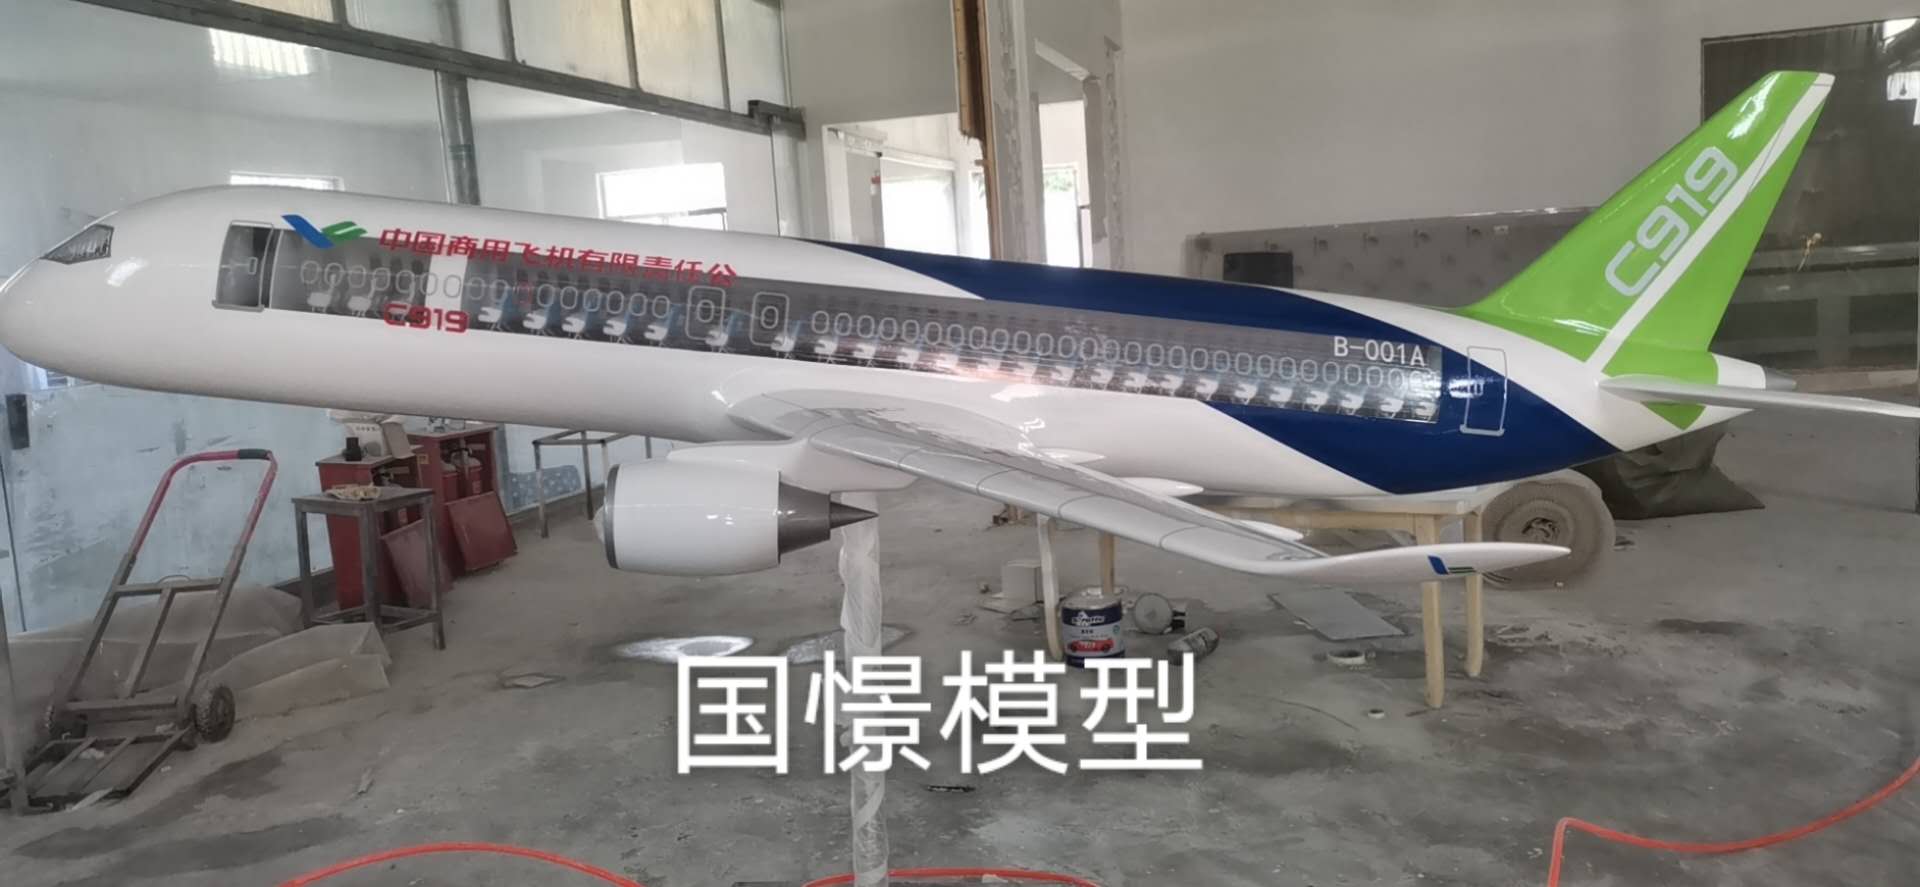 新和县飞机模型